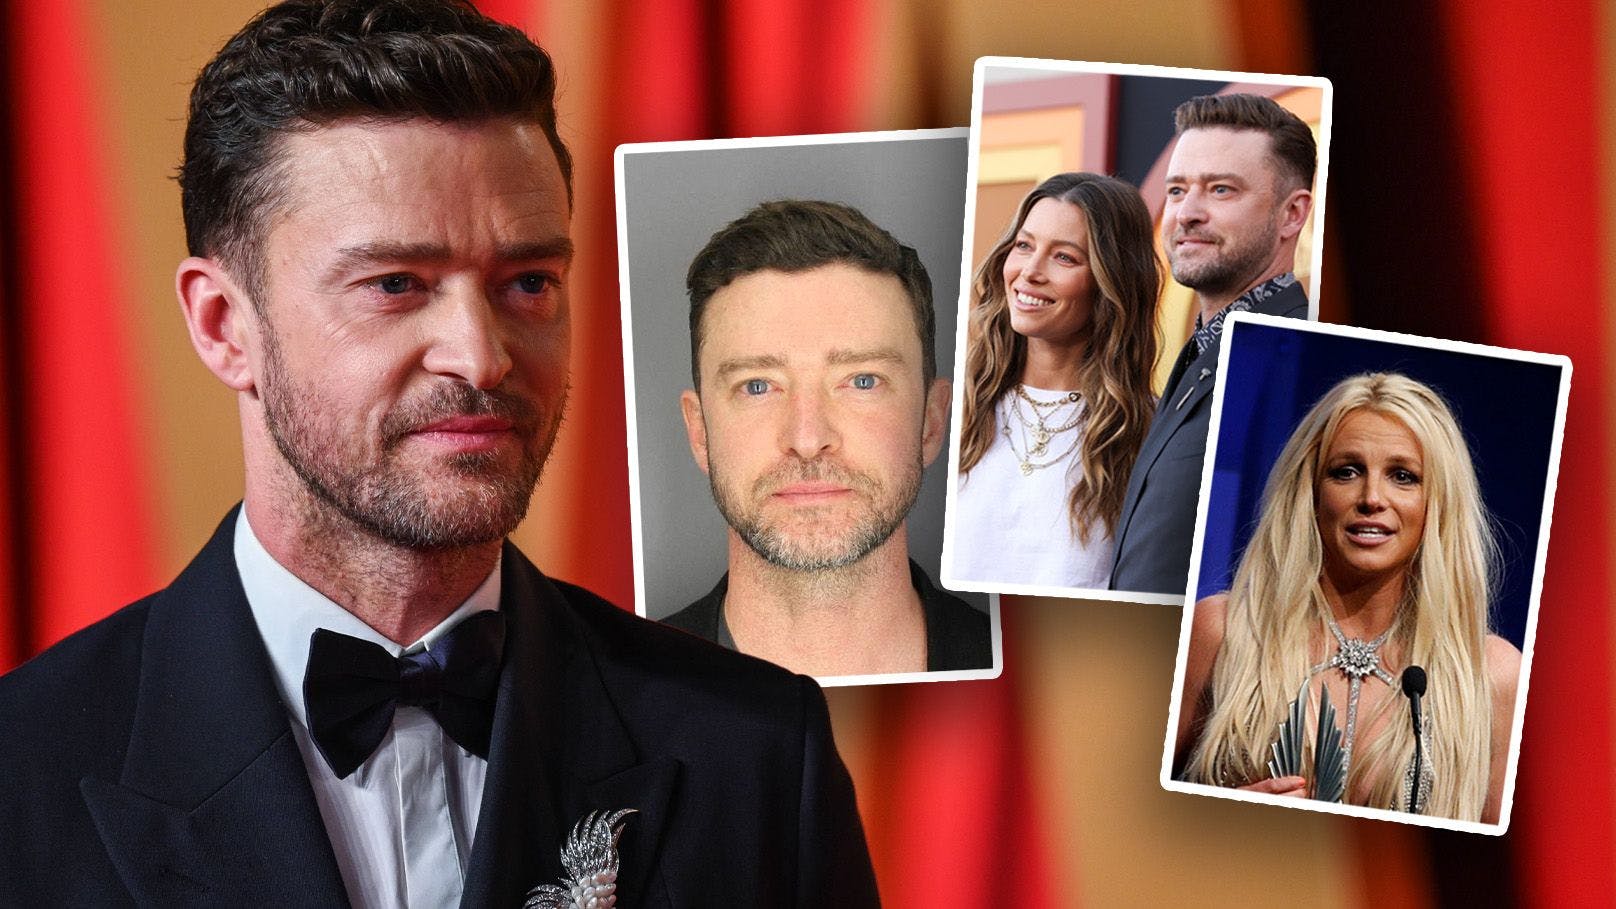 Skandalwelle um Timberlake – ist seine Karriere vorbei?